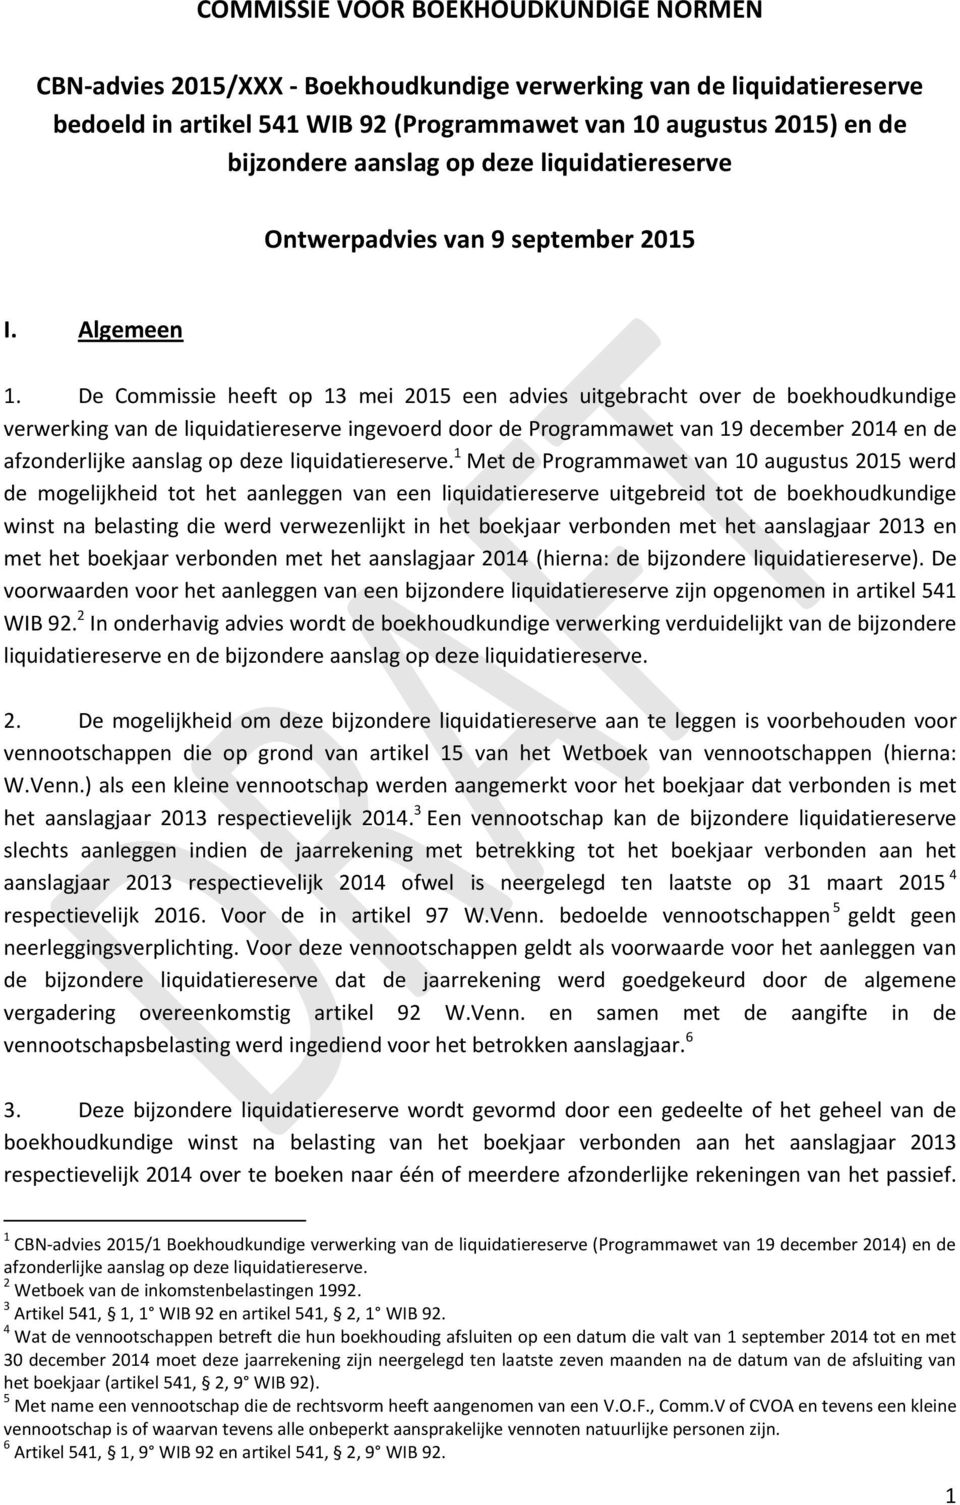 De Commissie heeft op 13 mei 2015 een advies uitgebracht over de boekhoudkundige verwerking van de liquidatiereserve ingevoerd door de Programmawet van 19 december 2014 en de afzonderlijke aanslag op